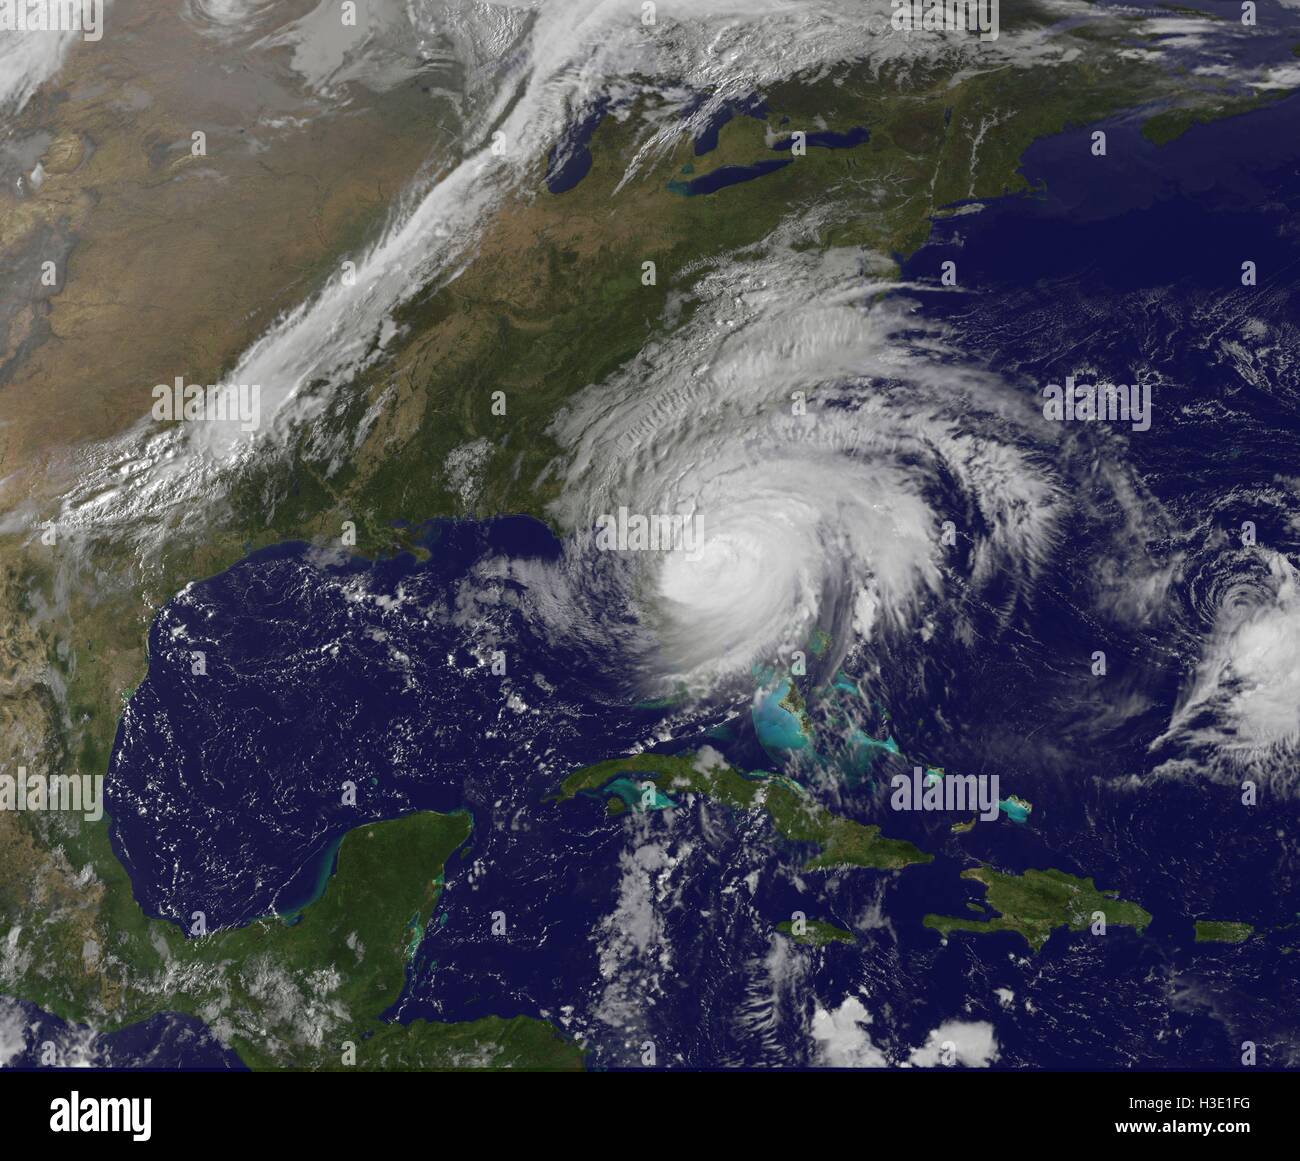 Silver Spring, Maryland, United States. 07Th Oct, 2016. Image en vraies couleurs de l'Atlantique Nord Ouest, montrant l'Ouragan Matthew sur l'état de Floride, prises par le satellite météo NOAA GOES at 13:25 UTC (9:25 EST), le 7 octobre 2016. NOAA Crédit Document/Gado/Alamy Live News. Banque D'Images